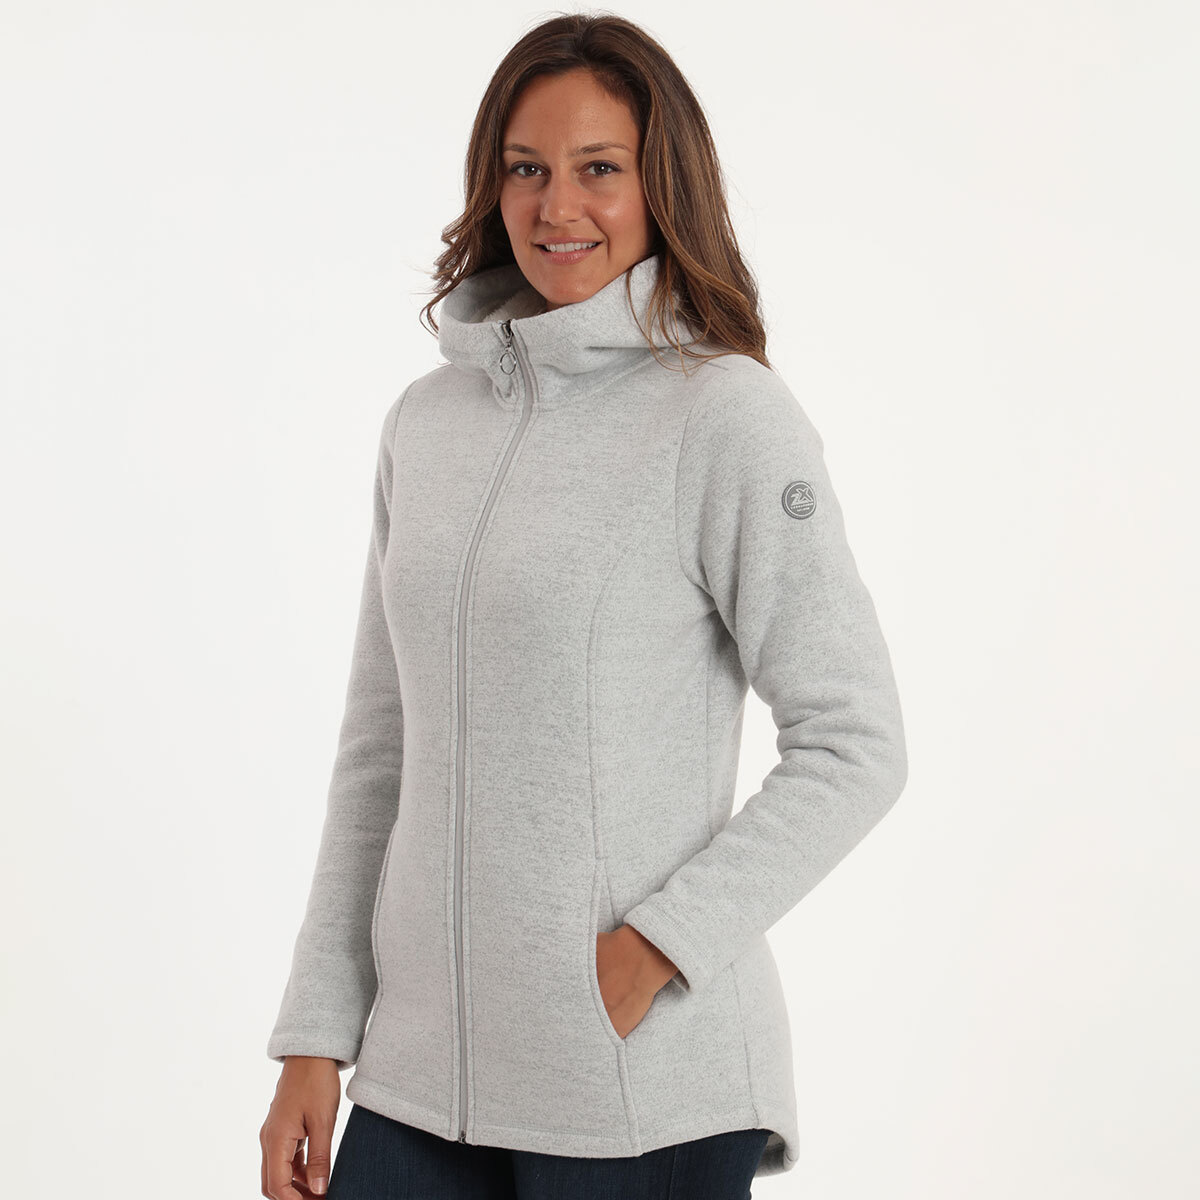 Gerry Stratus Women's Fleece in Grey | Costco UK